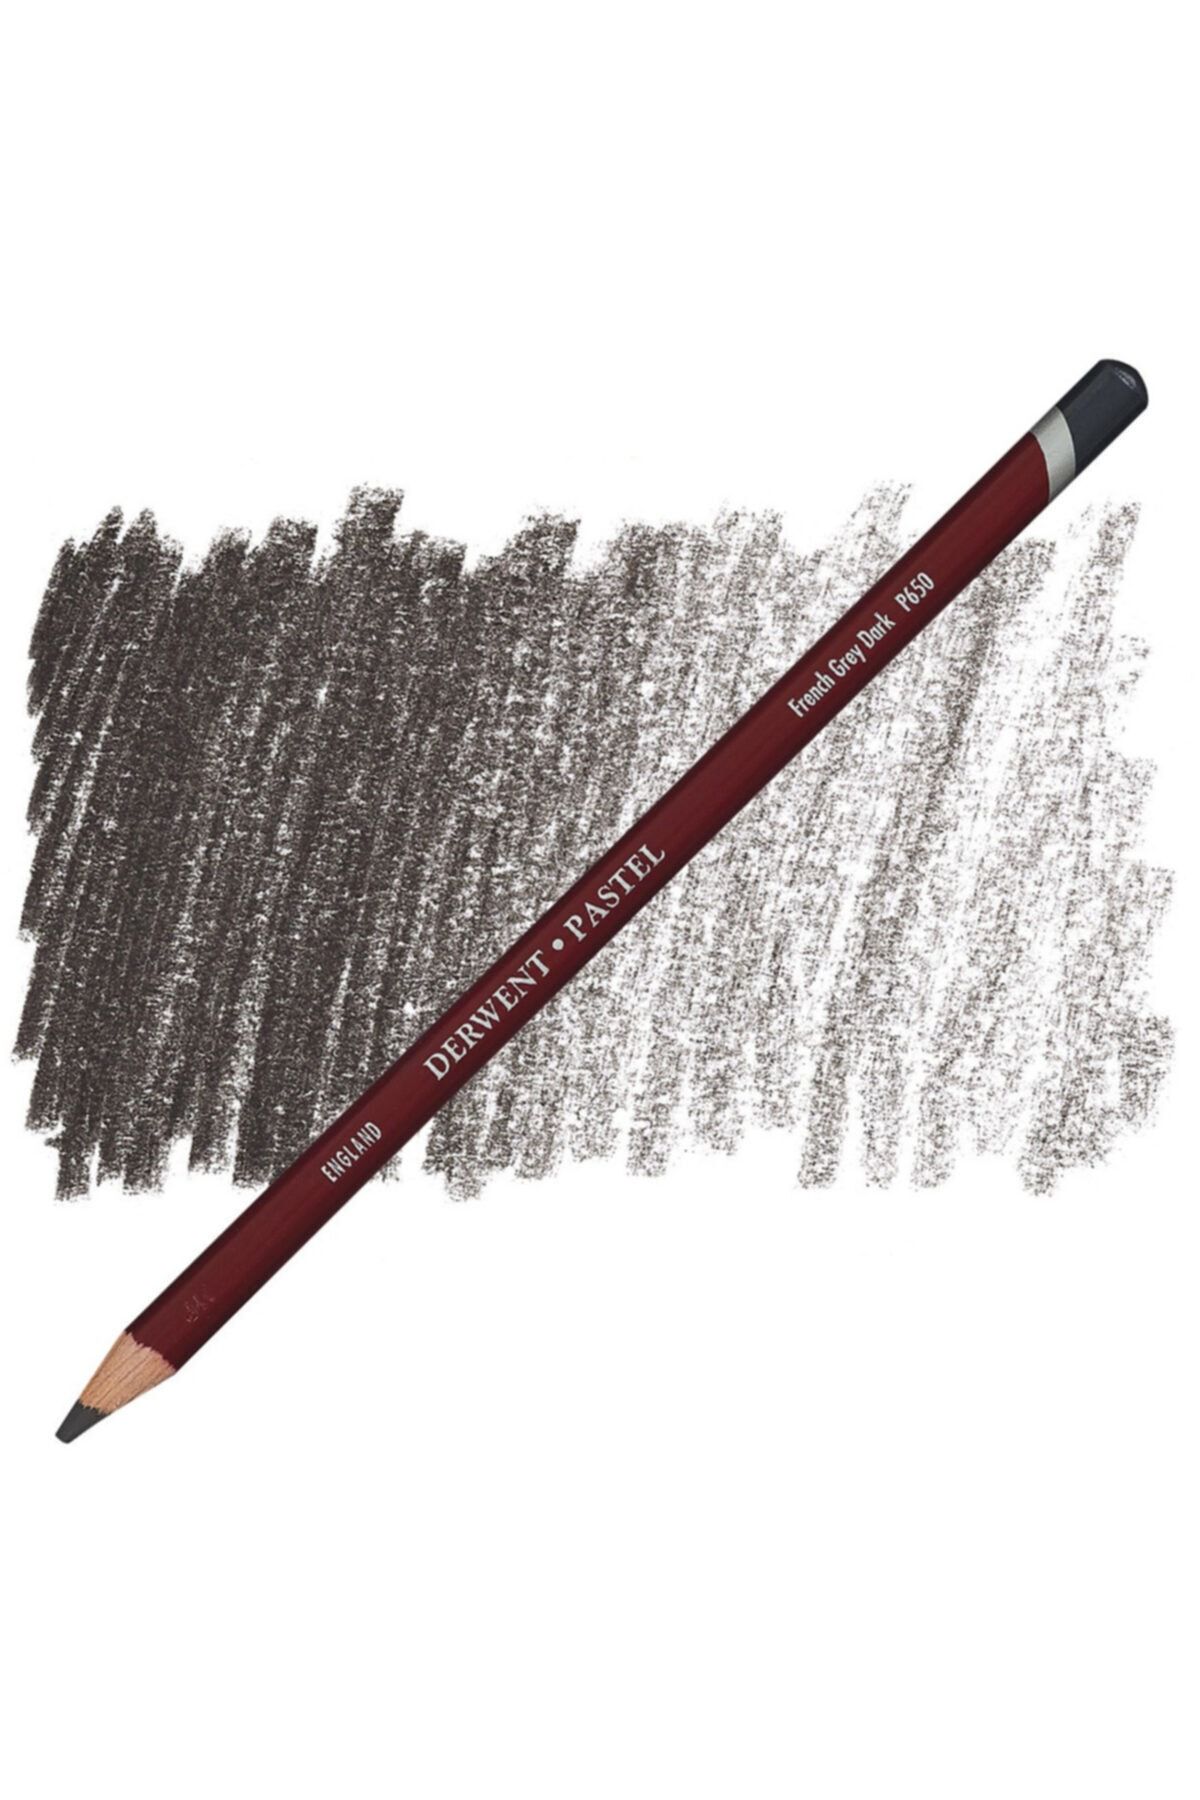 Derwent Pastel Pencil P650 French Grey Dark